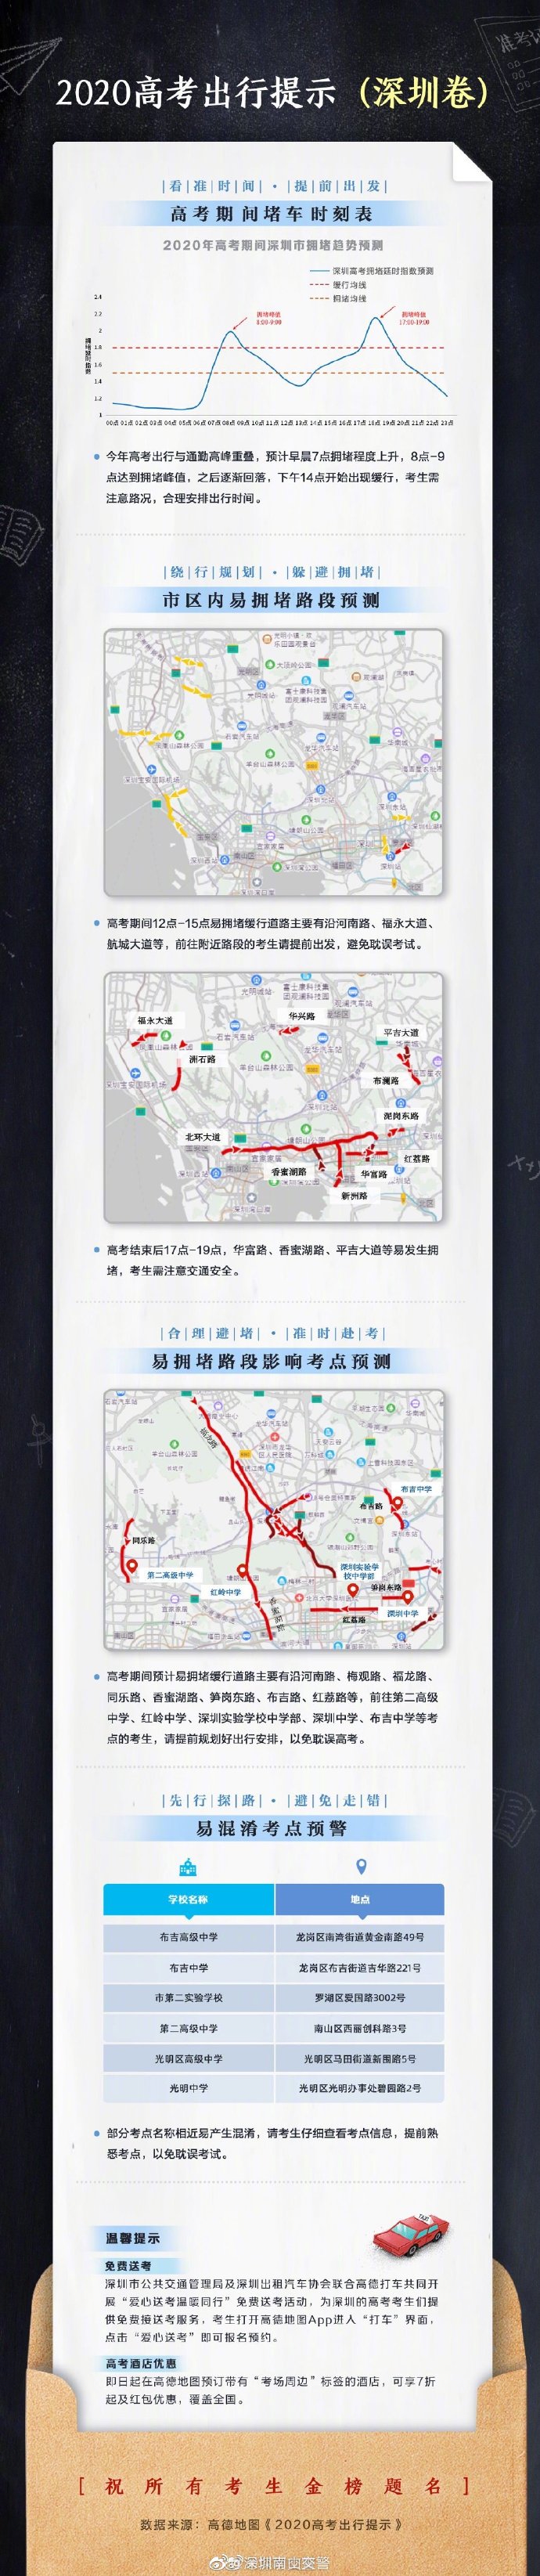 高考交通管制!2020深圳高考出行提醒